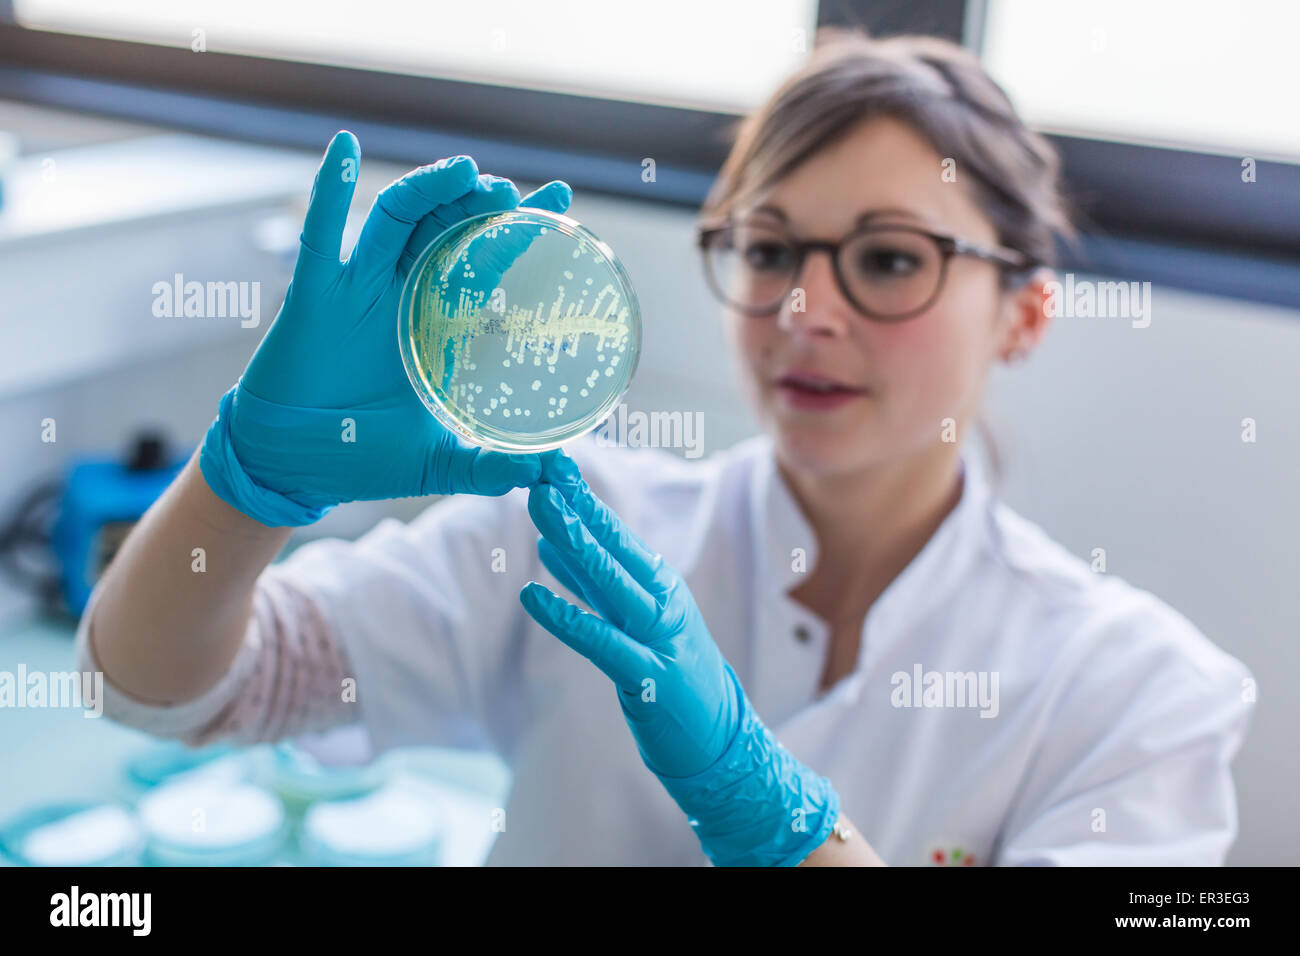 Manos sosteniendo una placa de cultivo las pruebas para detectar la presencia de la bacteria Escherichia coli mirando a la resistencia a los antibióticos, la biología y el Centro de Investigación en Salud, el Hospital de la Universidad de Limoges, Francia. Foto de stock